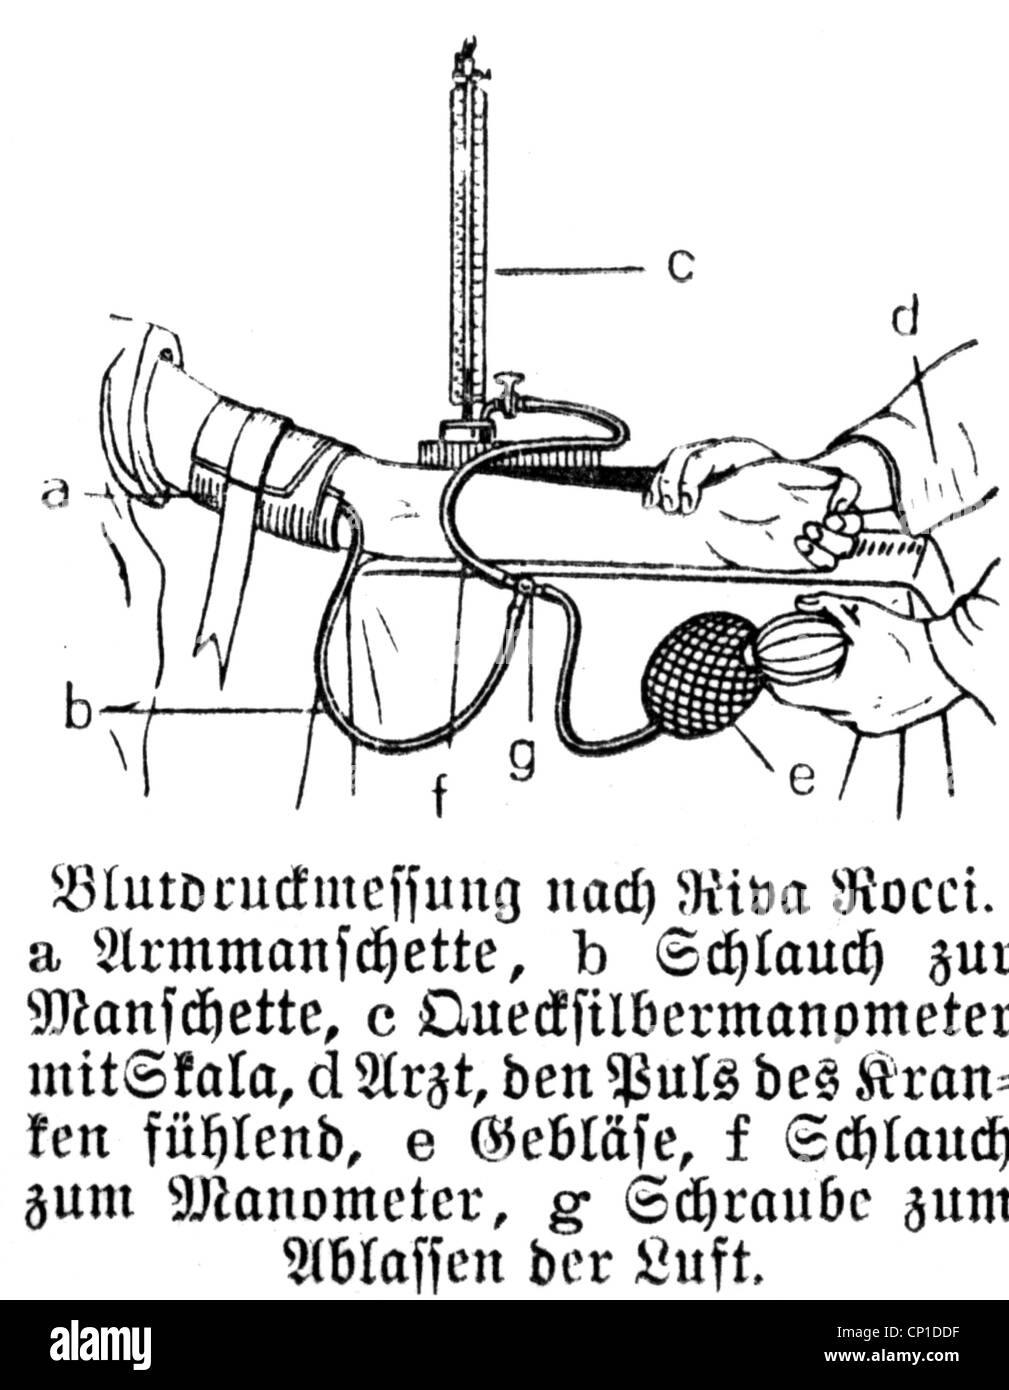 Medizin, medizinische Instrumente, Blutdruckmessgerät von Scipione Riva- Rocci, Zeichnung, 1896, Additional-Rights-Clearences-not available  Stockfotografie - Alamy